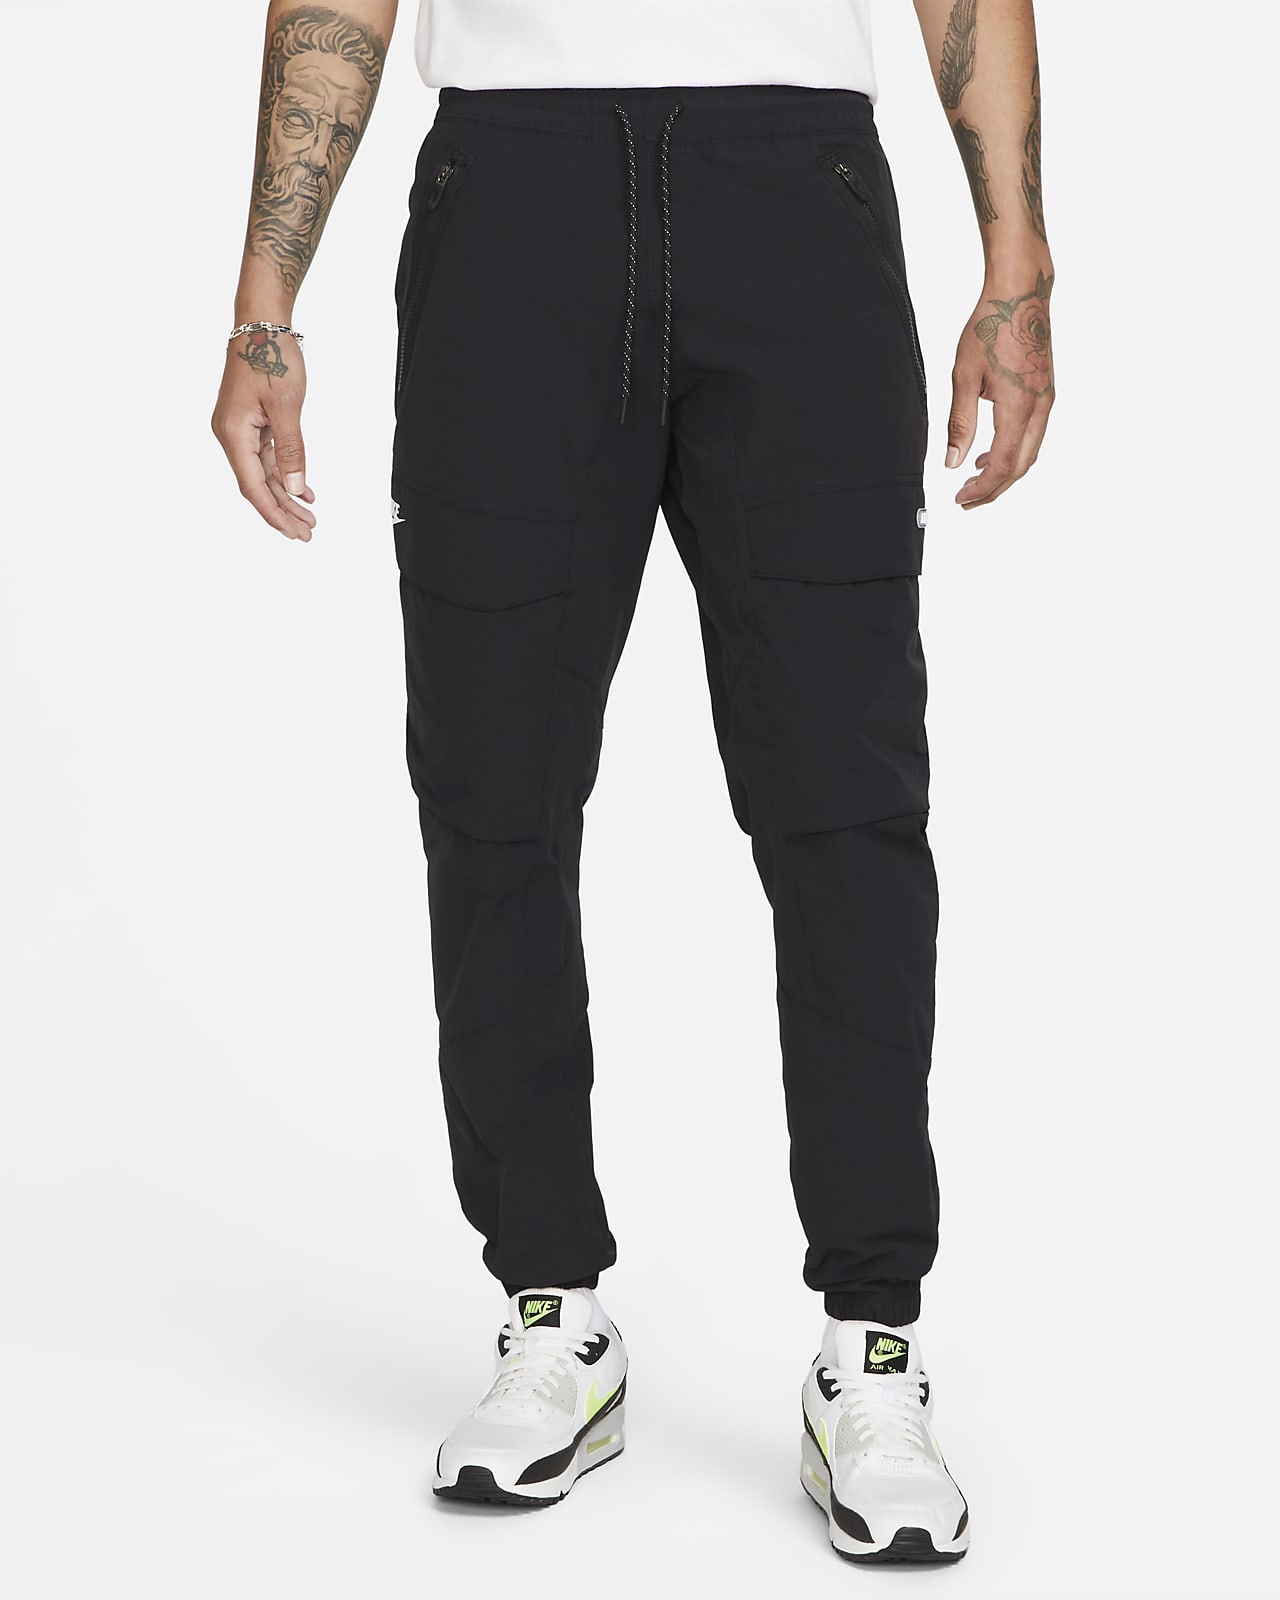 Nike Sportswear Air Men's Trousers